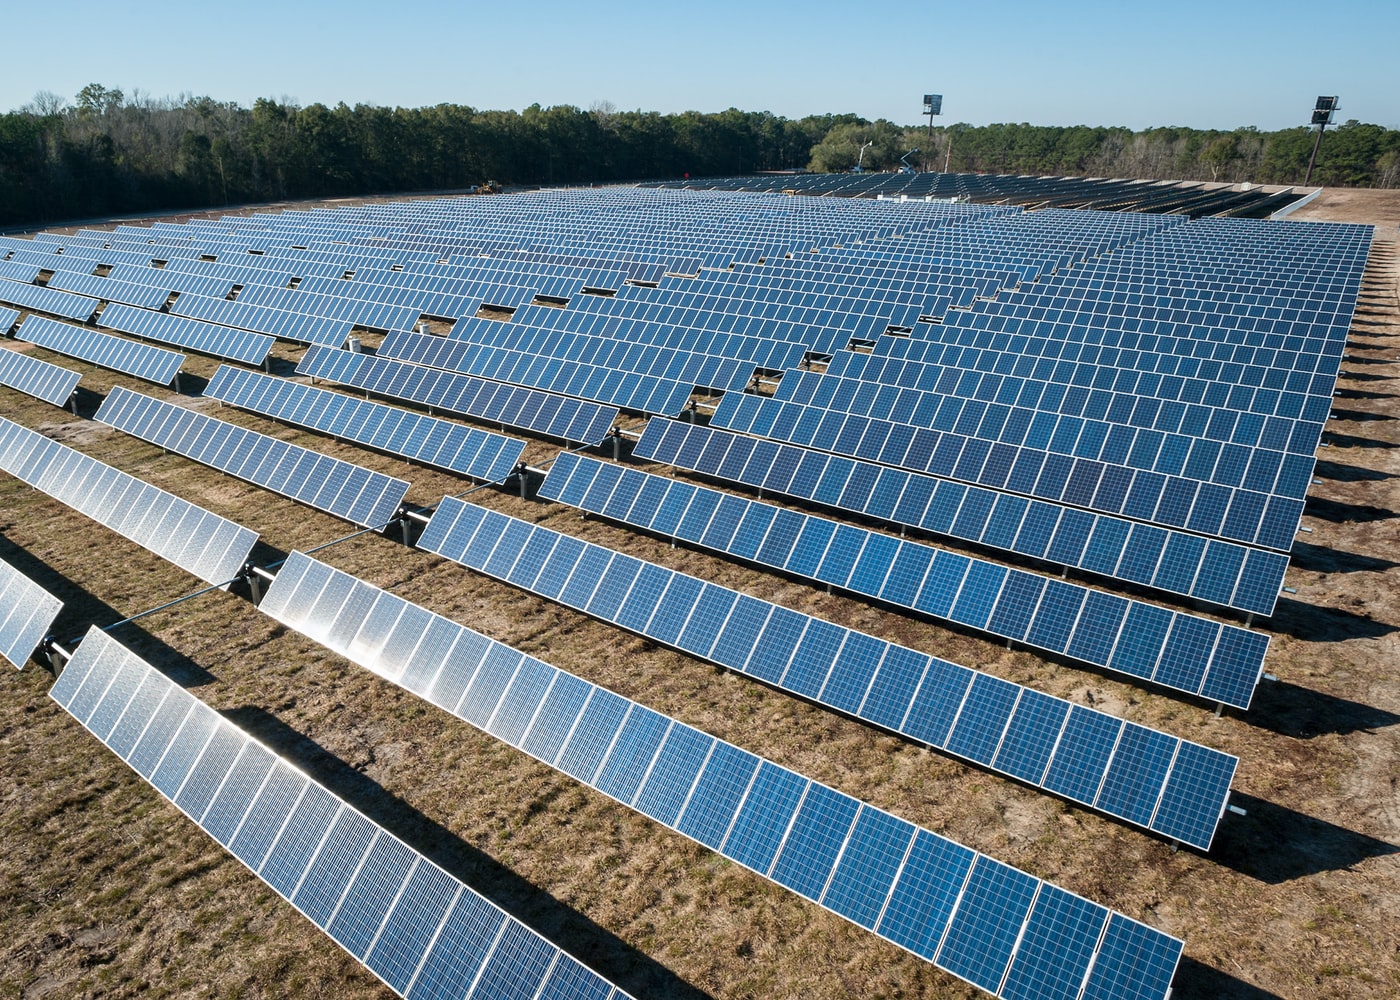 太陽光発電 ソーラーパネル の発電量計算方法と発電効率を上げる方法 太陽光発電所の物件売買ならソルセル